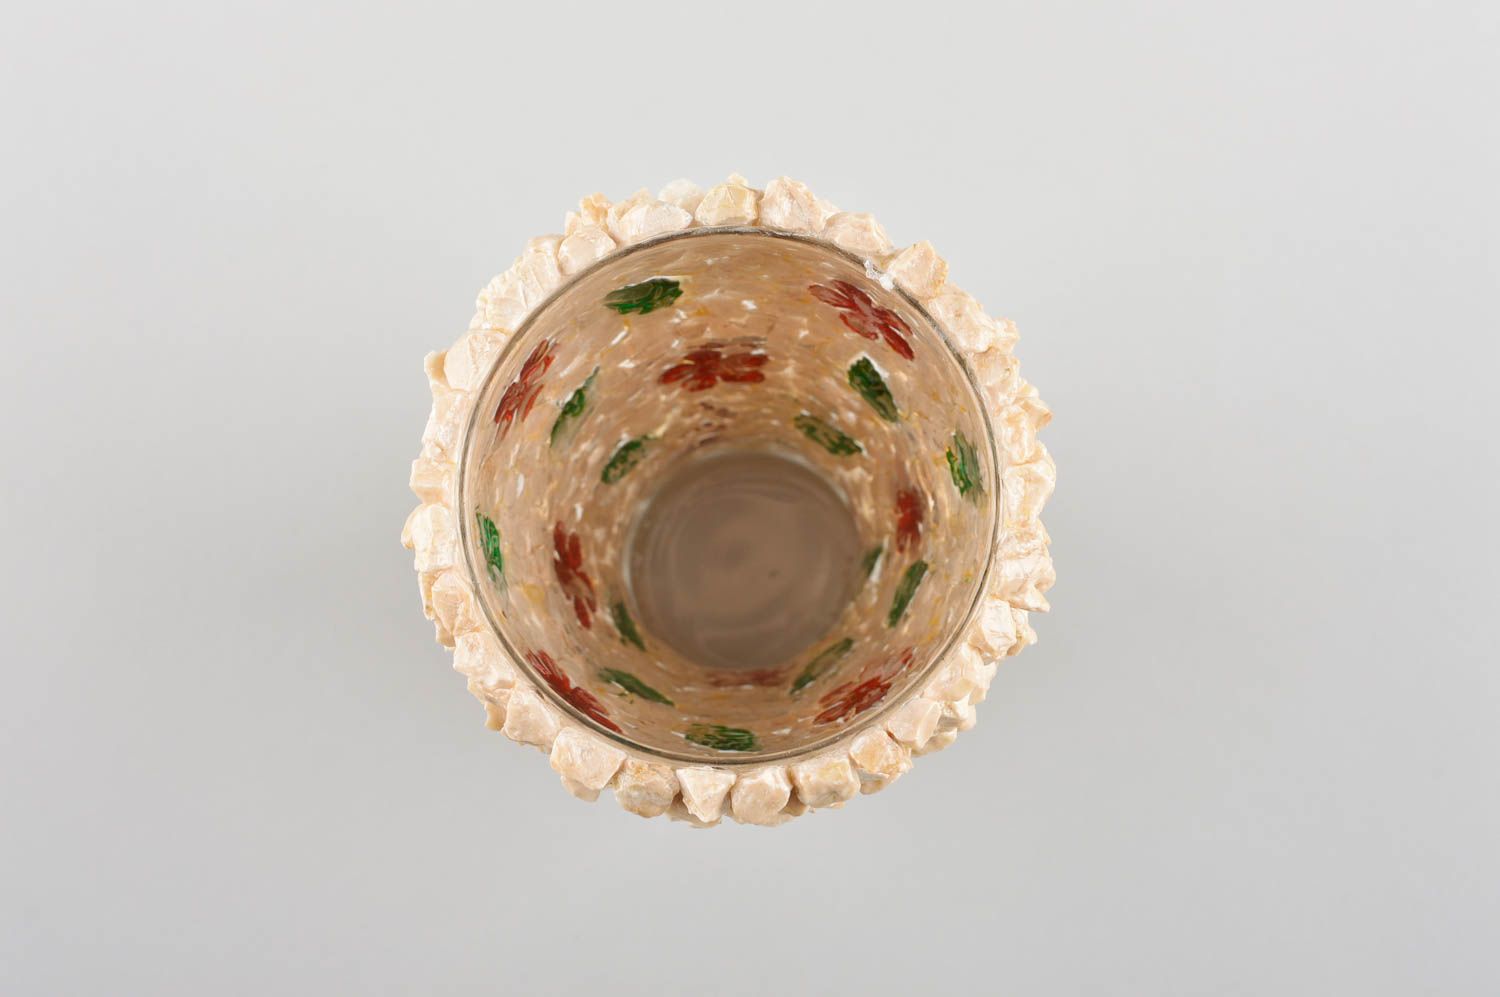 Vaso de cristal hecho a mano decorado utensilio de cocina elemento decorativo foto 4